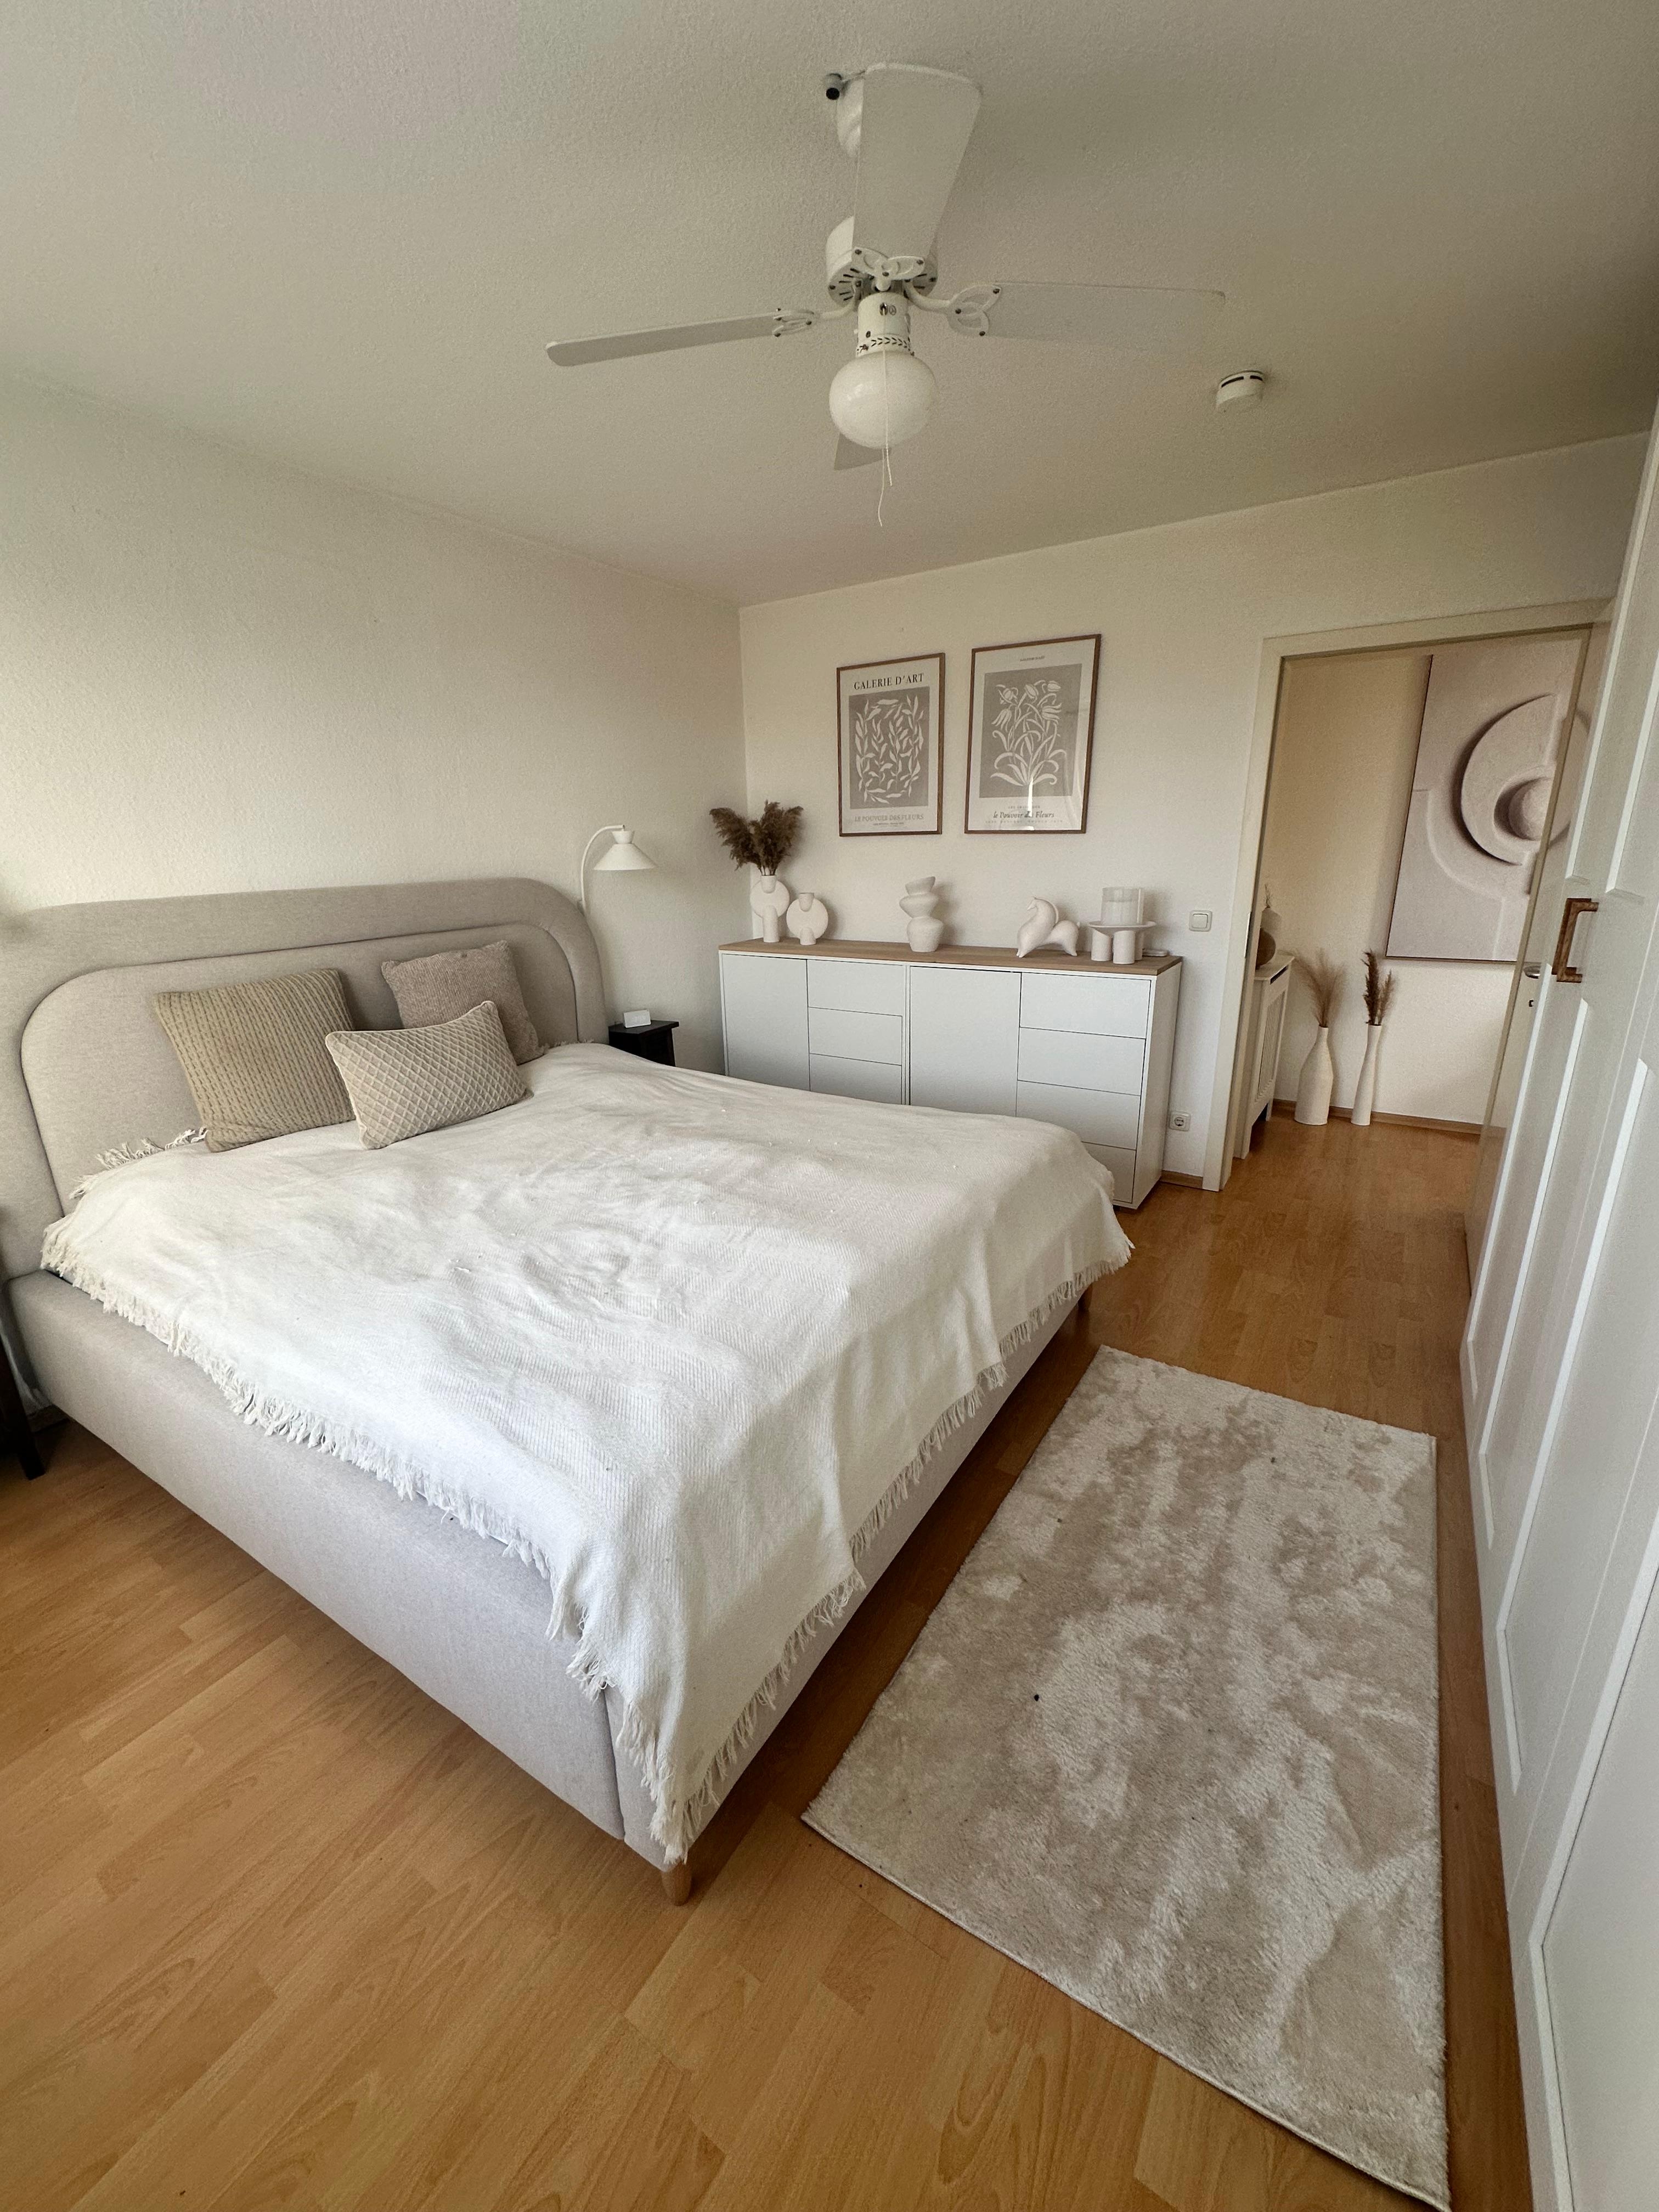 Die Umgestaltung unseres Schlafzimmers ist abgeschlossen und ich bin superglücklich mit dem Ergebnis.
#schlafzimmer #minimalistisch #bedroom #beige #weiß #scandi